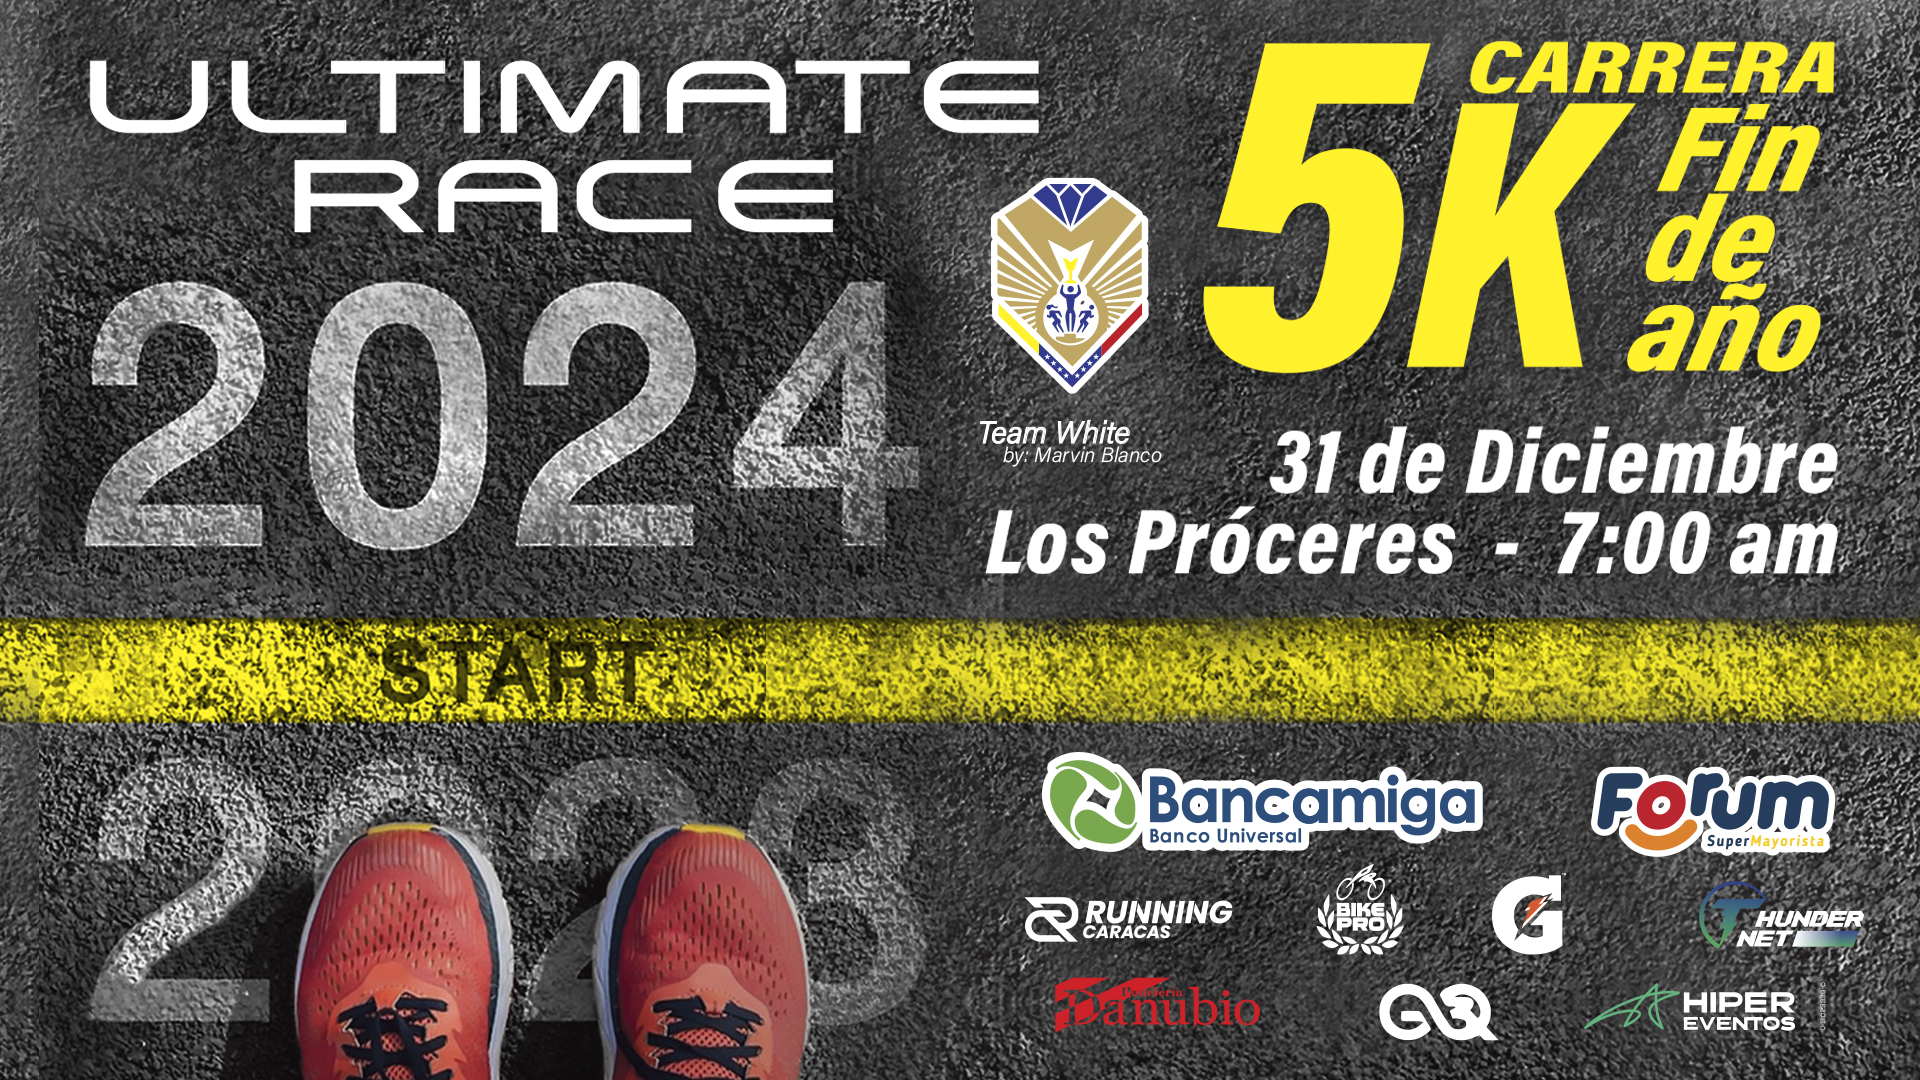 ULTIMATE RACE - CARRERA 5K FIN DE AÑO